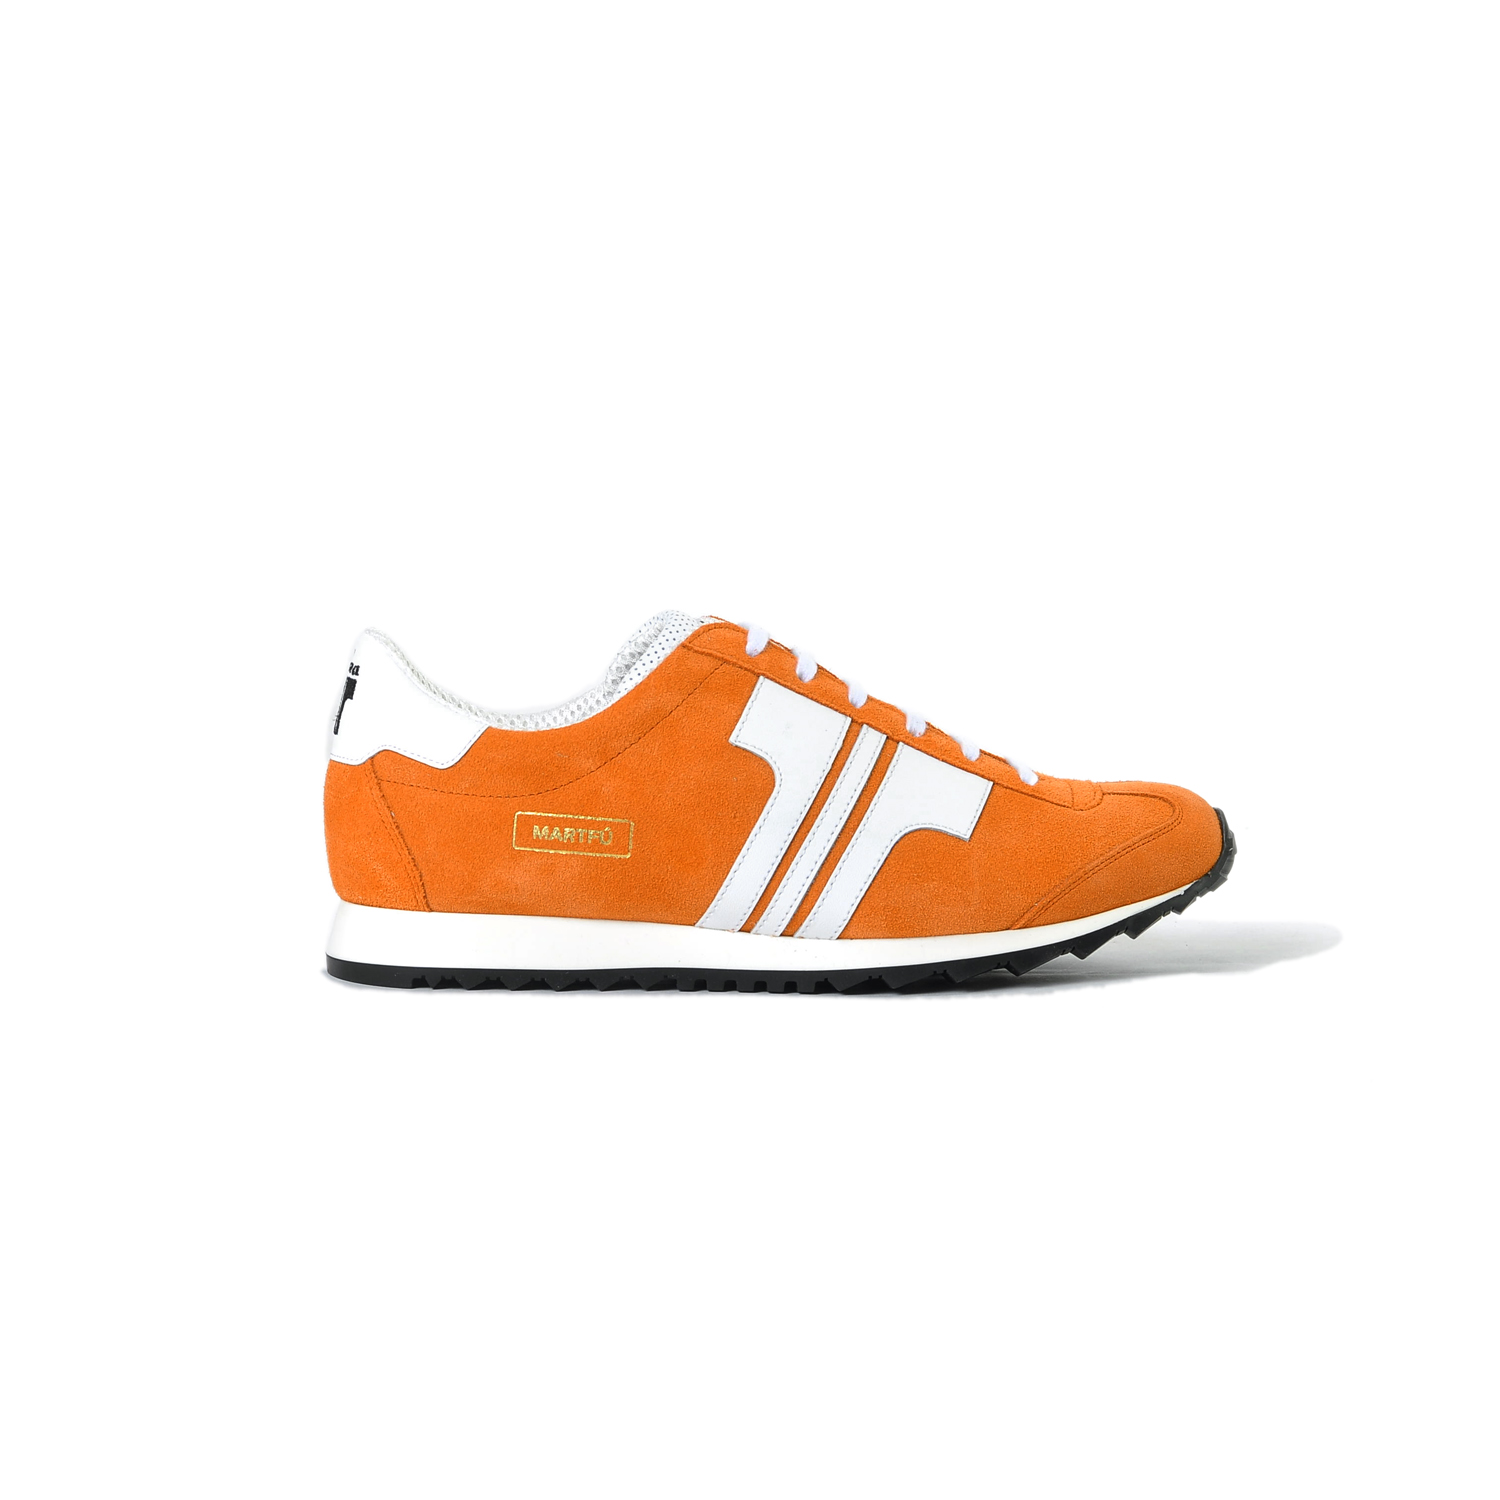 Tisza shoes - Martfű - Orange-white